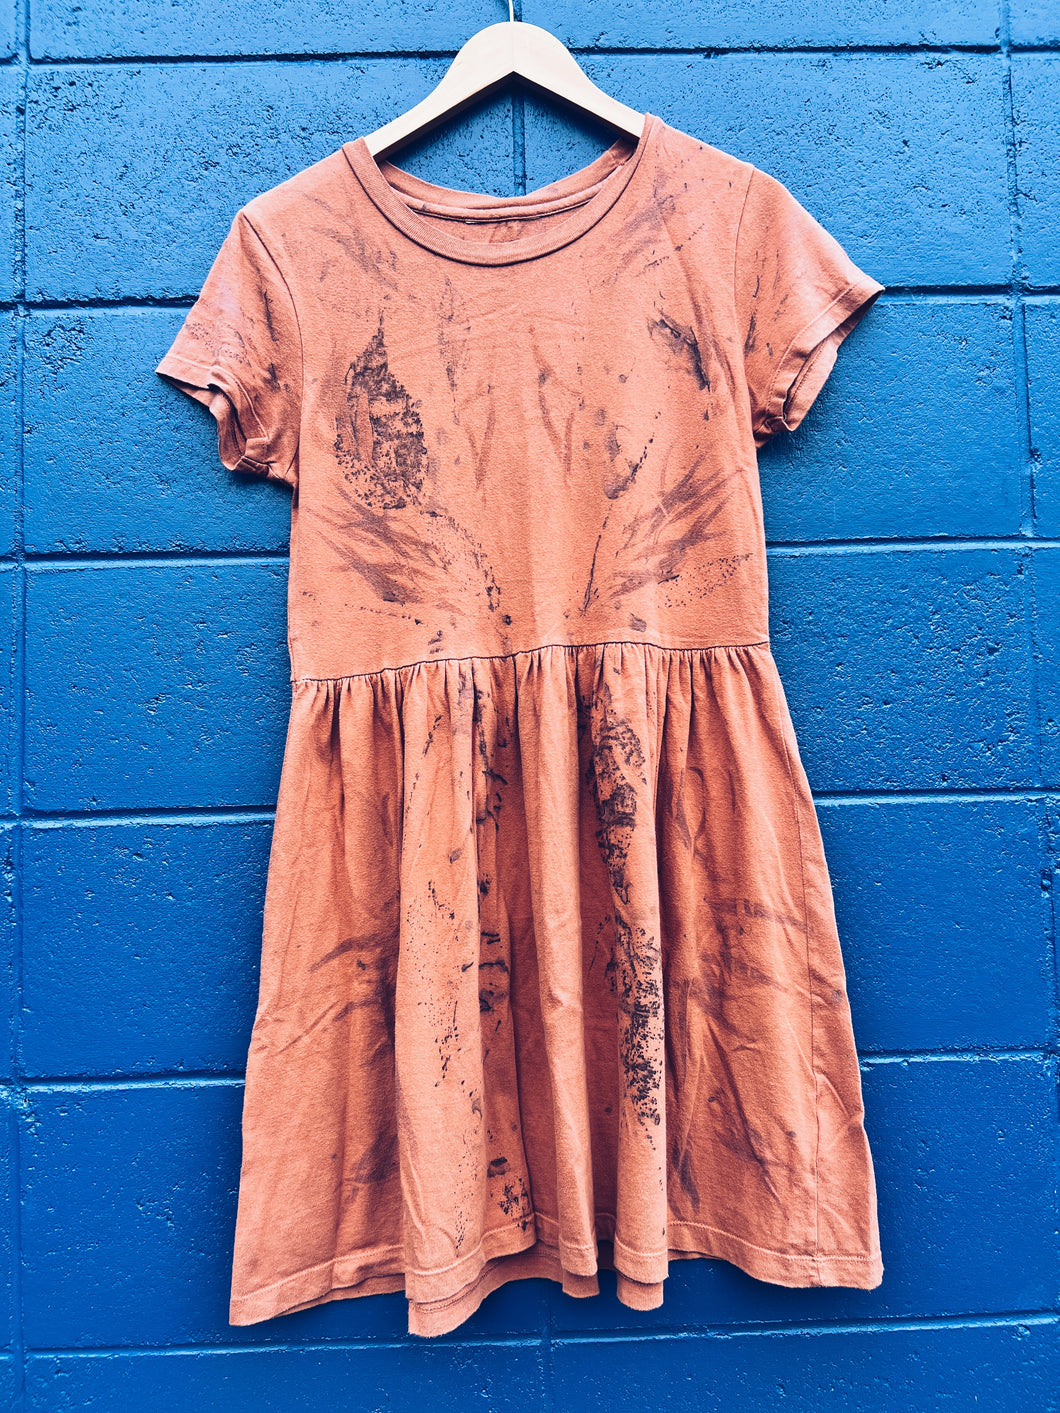 Wild Gum Apricot Dress - Cotton S/M